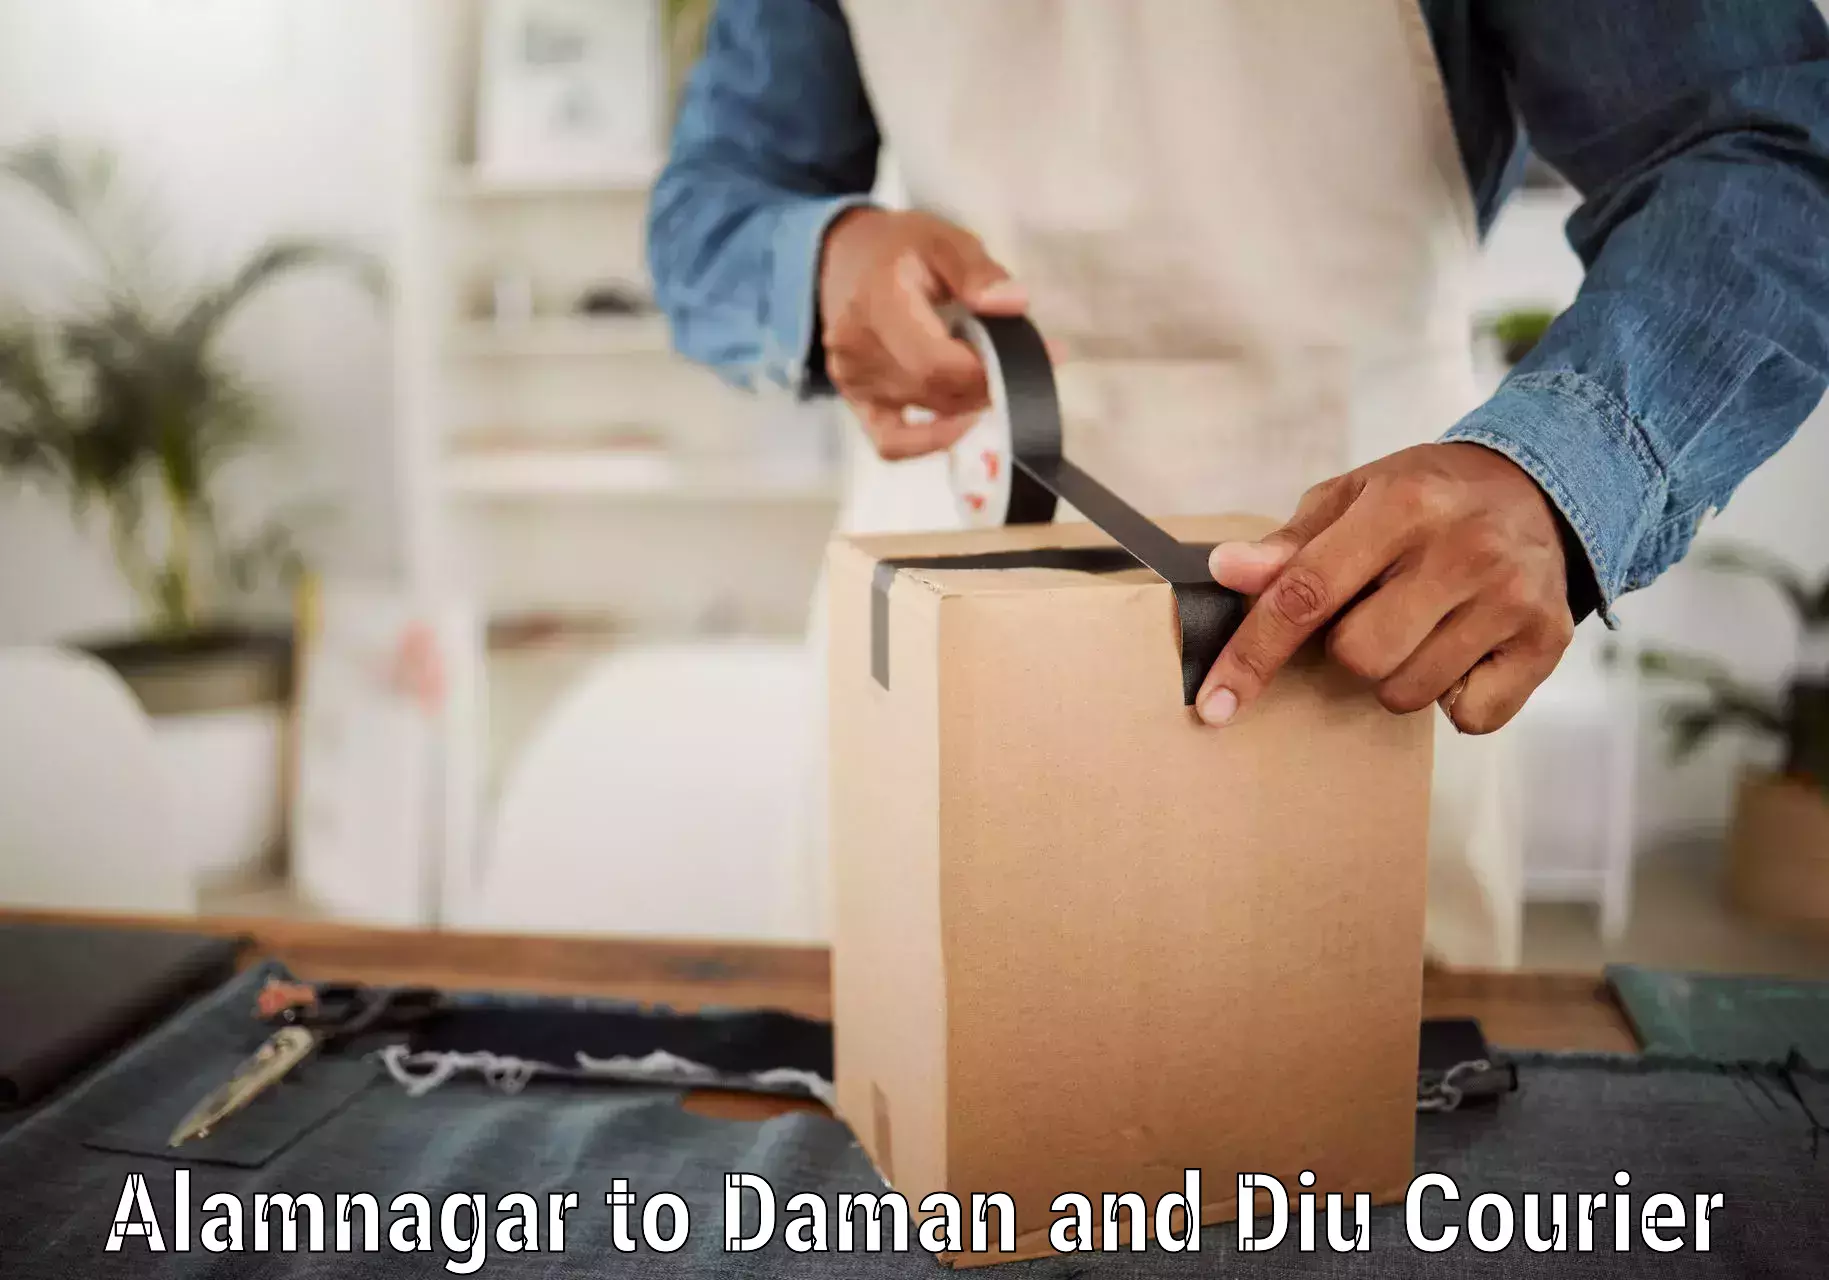 On-call courier service Alamnagar to Daman